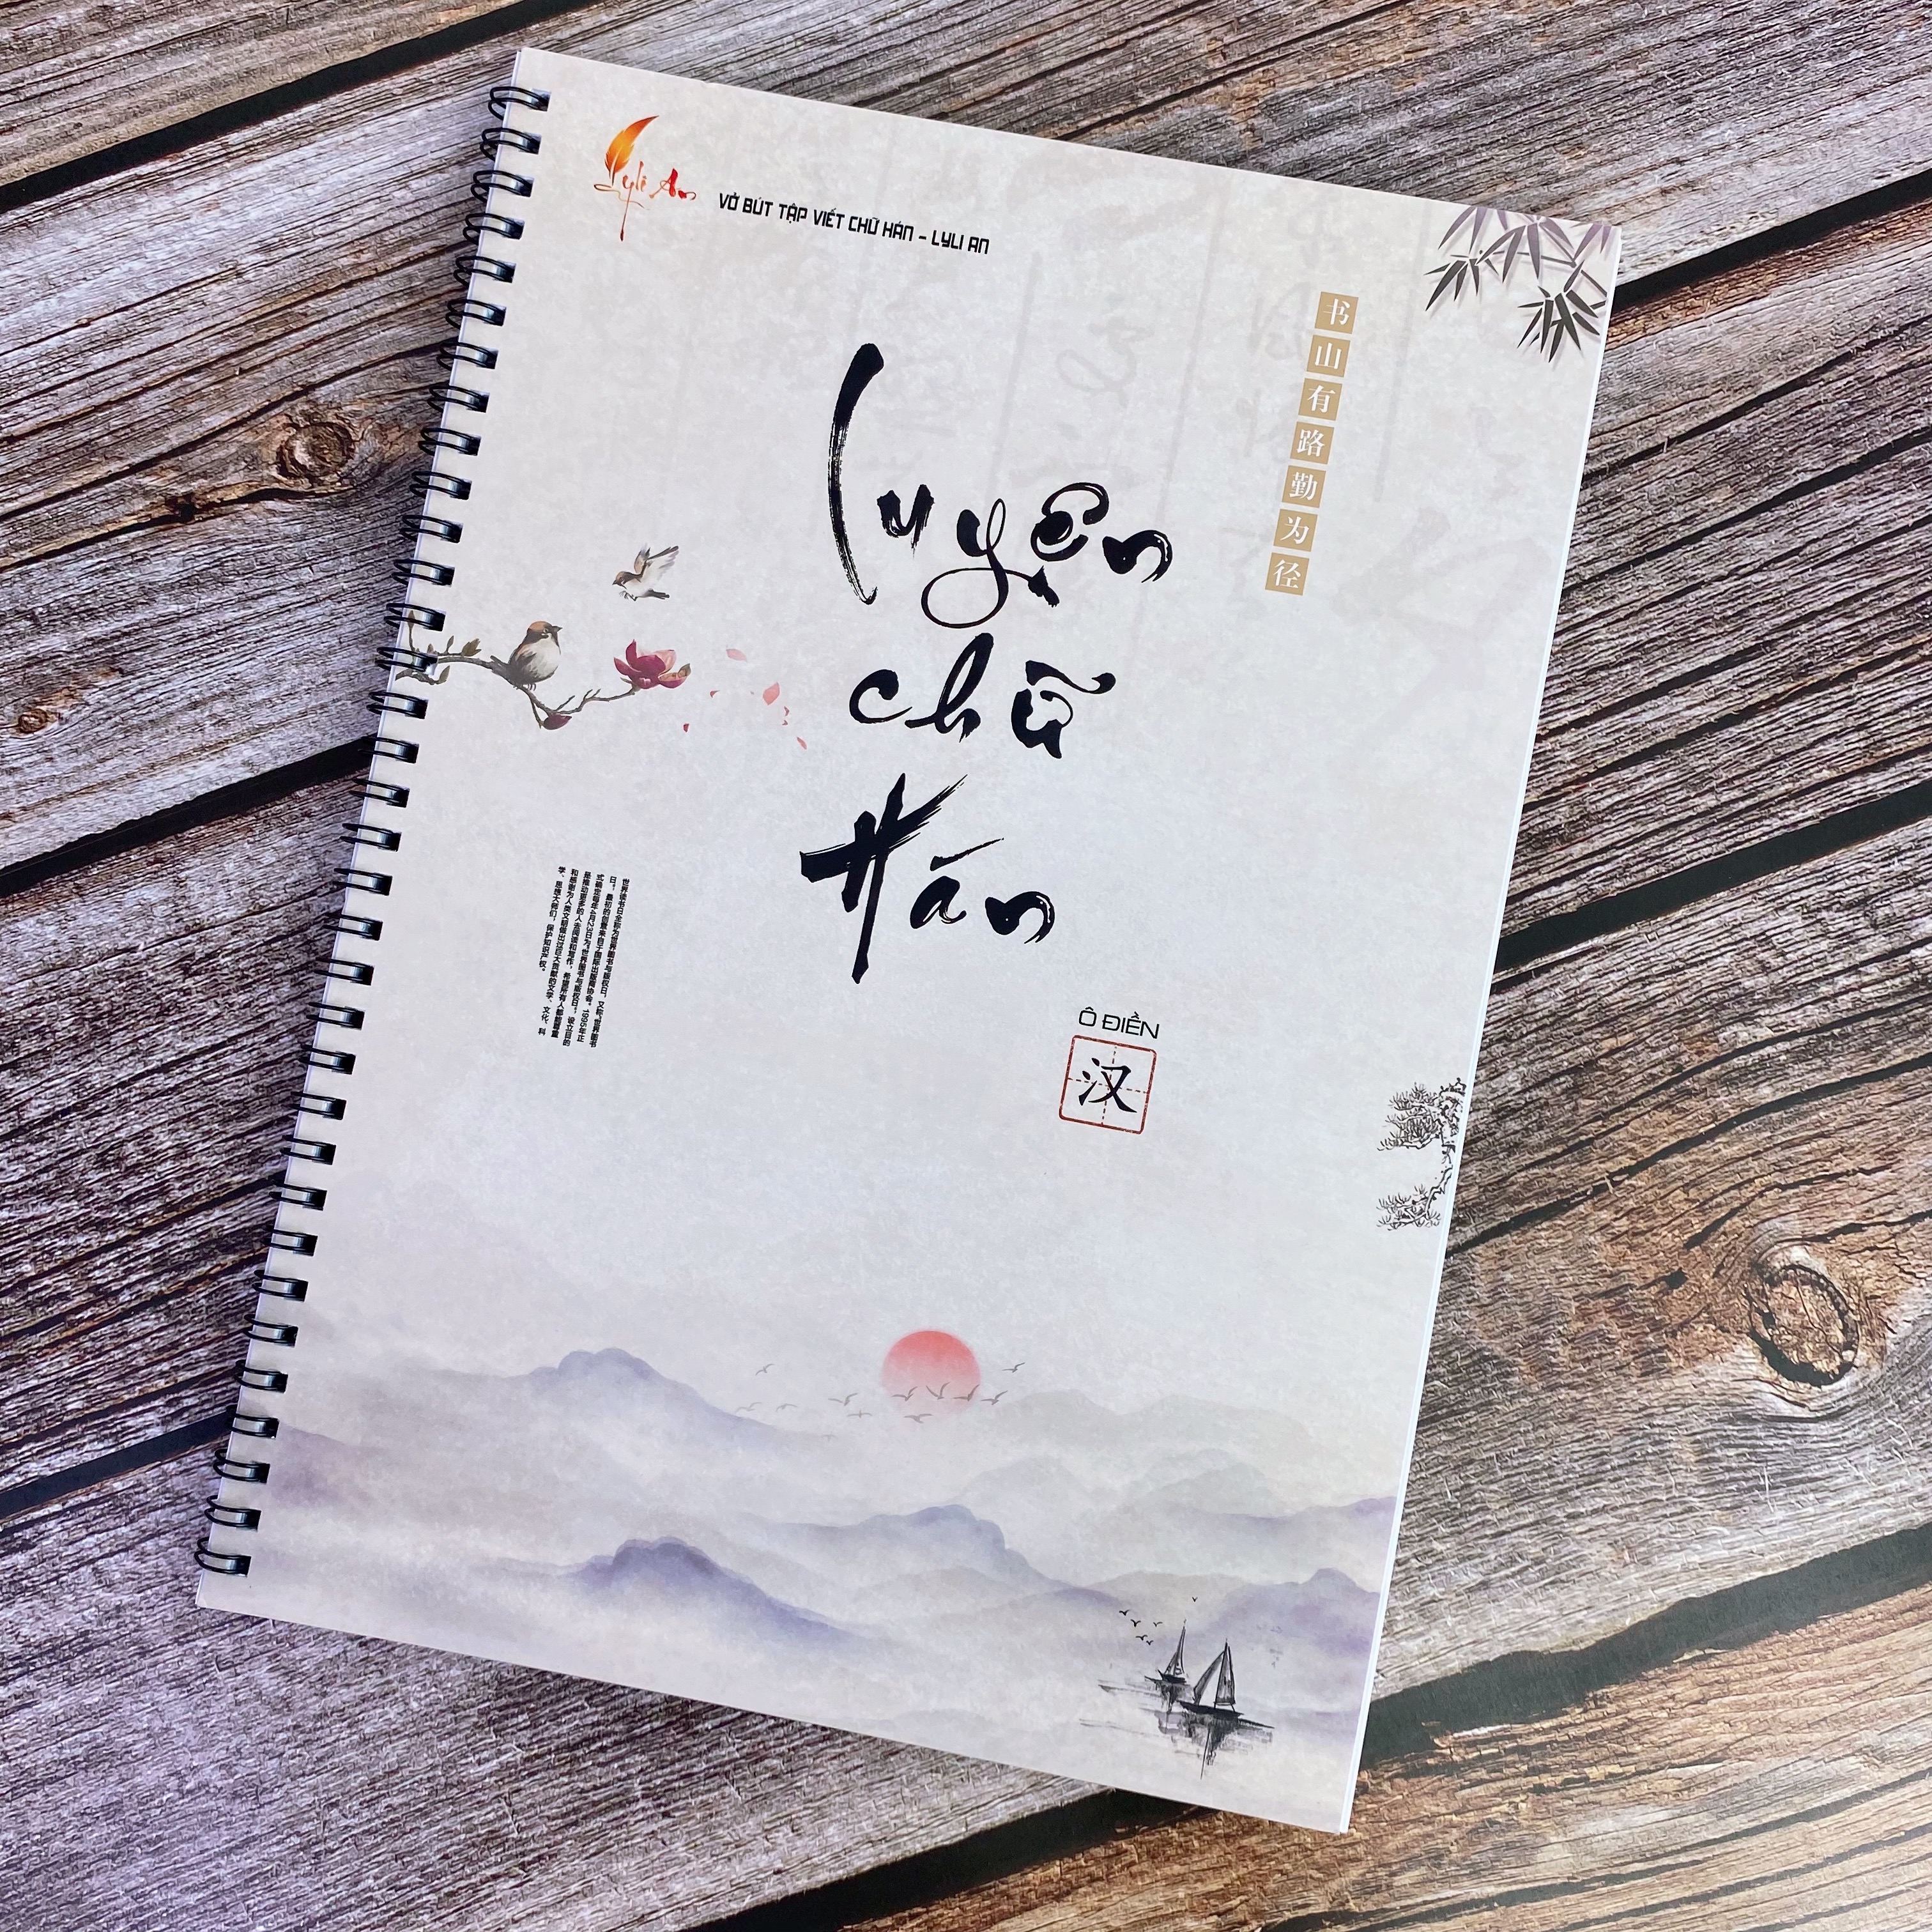 Vở Luyện Viết Tiếng Trung LOẠI DÀY Khổ to A4 - Vở tập viết chữ Hán ô Điền, luyện chữ Trung Quốc cho người mới bắt đầu